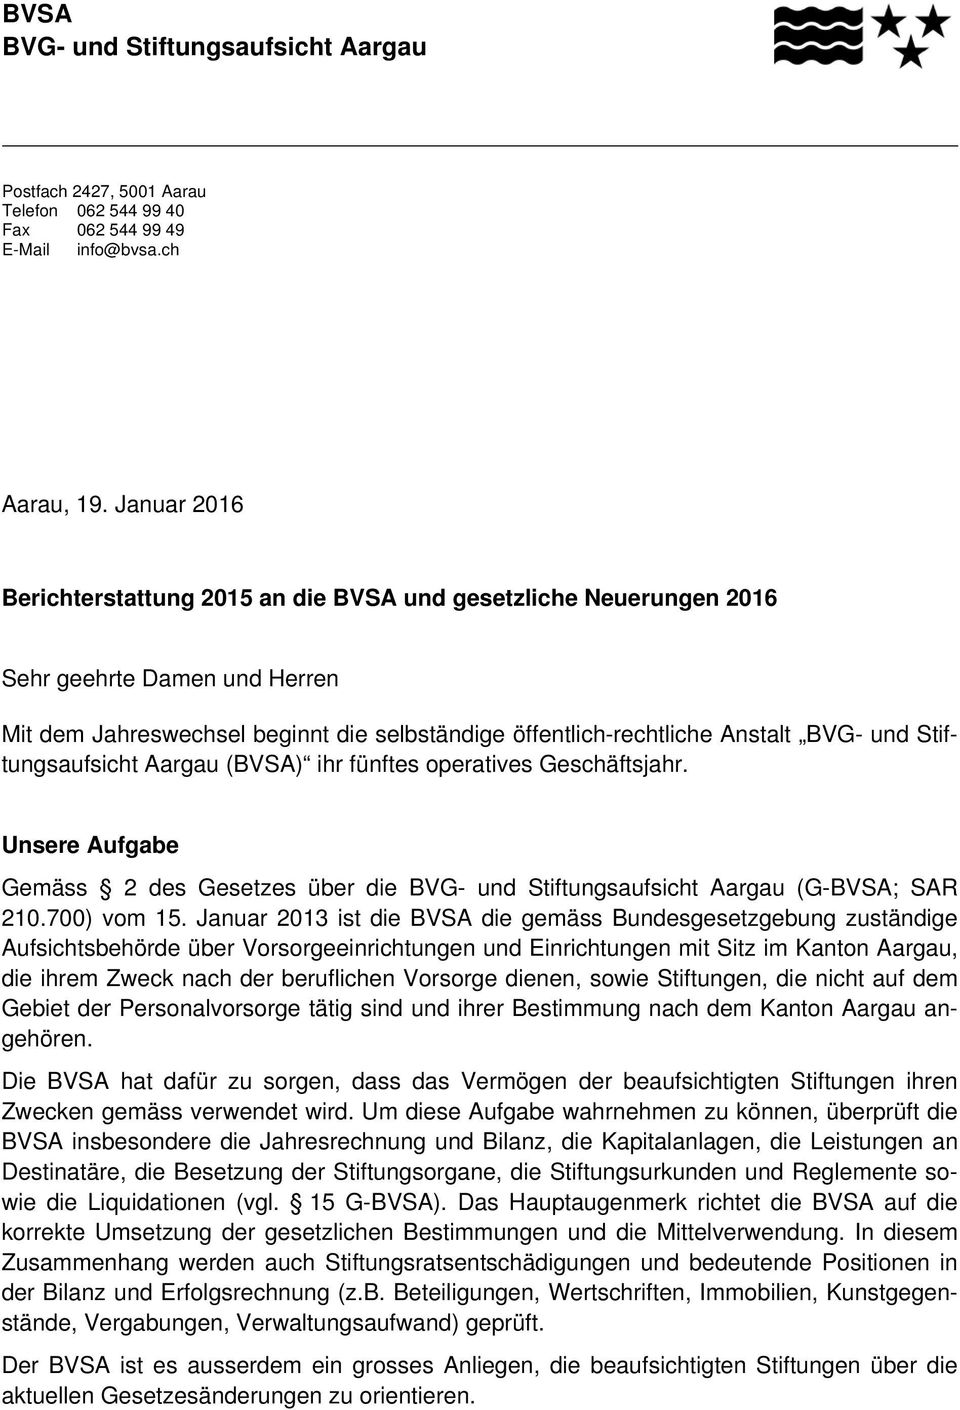 Stiftungsaufsicht Aargau (BVSA) ihr fünftes operatives Geschäftsjahr. Unsere Aufgabe Gemäss 2 des Gesetzes über die BVG- und Stiftungsaufsicht Aargau (G-BVSA; SAR 210.700) vom 15.